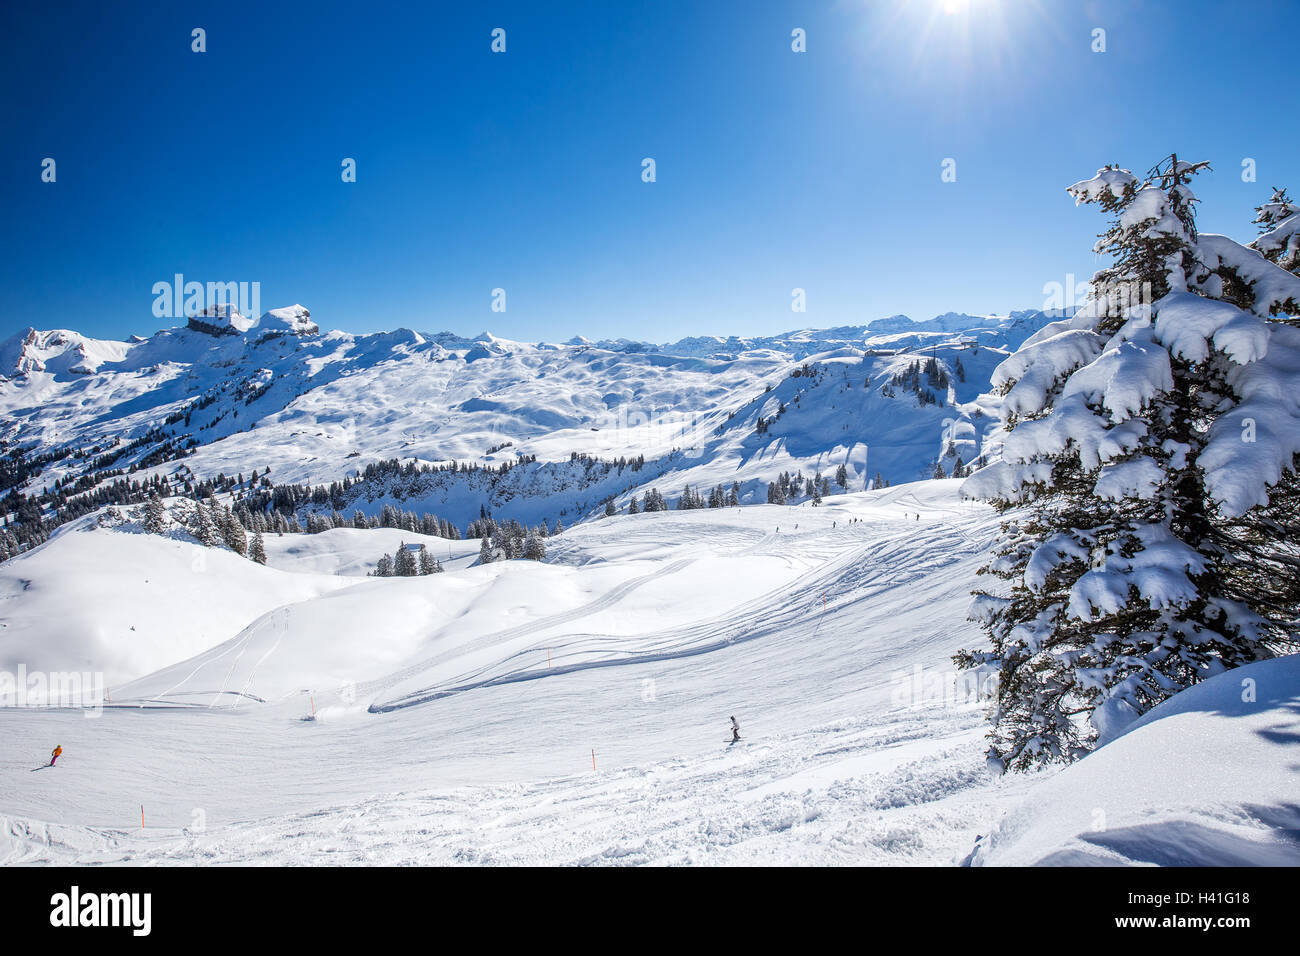 Alpes Suisses couverts par la neige fraîche vu de Hoch-Ybrig ski resort, Suisse Centrale Banque D'Images